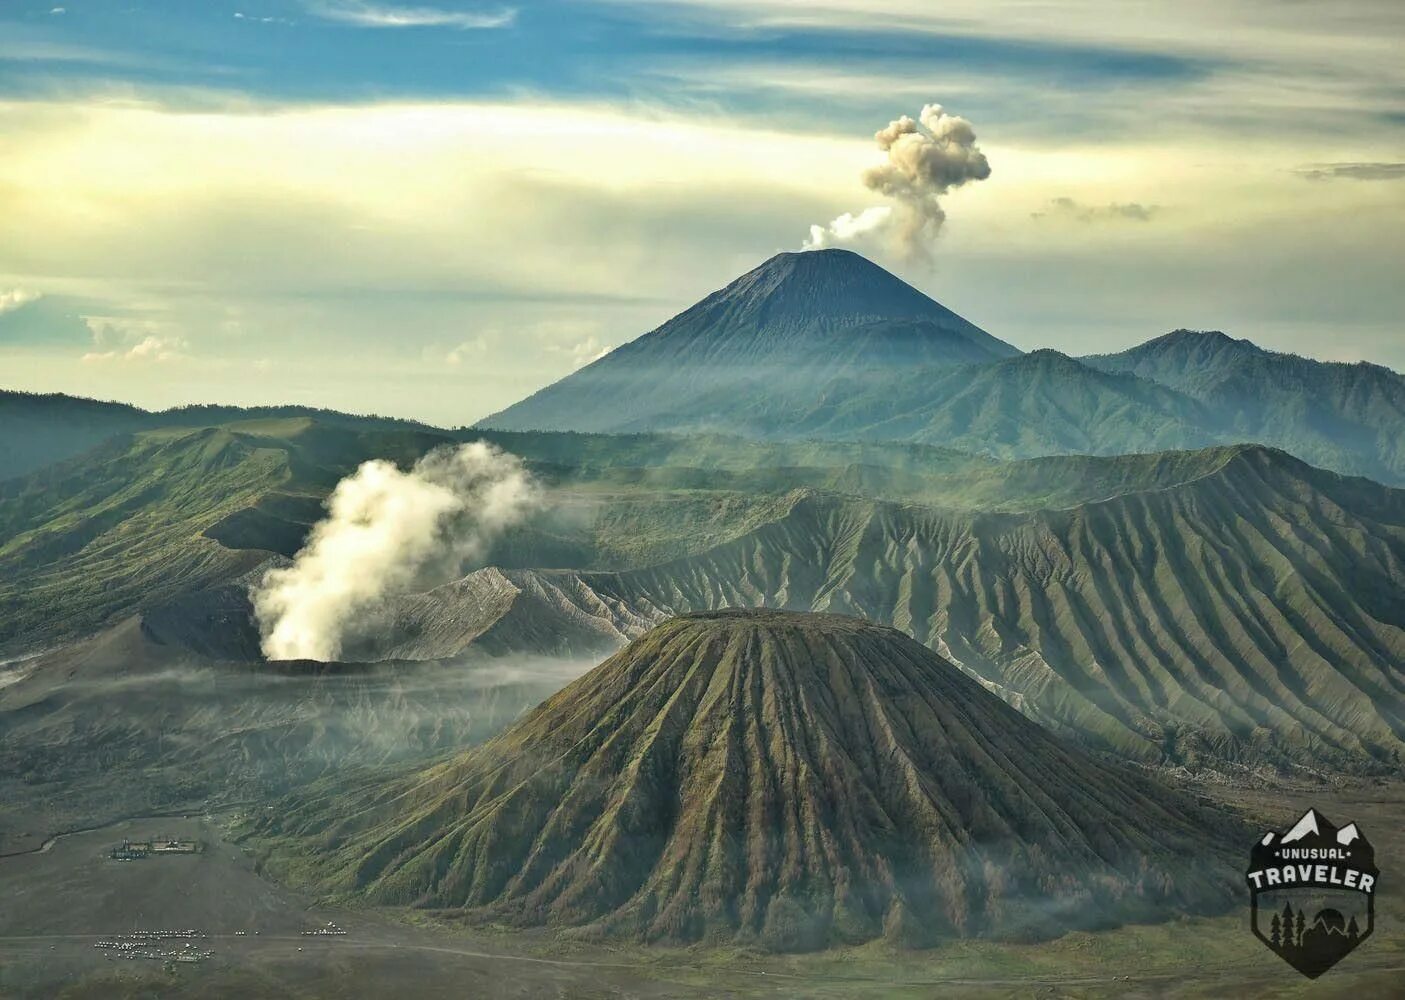 Известные вулканы на земле. Потухший вулкан Килиманджаро. Вулкан Килиманджаро извержение. Африка вулканы Килиманджаро Камерун. Стратовулкан Африки — Килиманджаро.